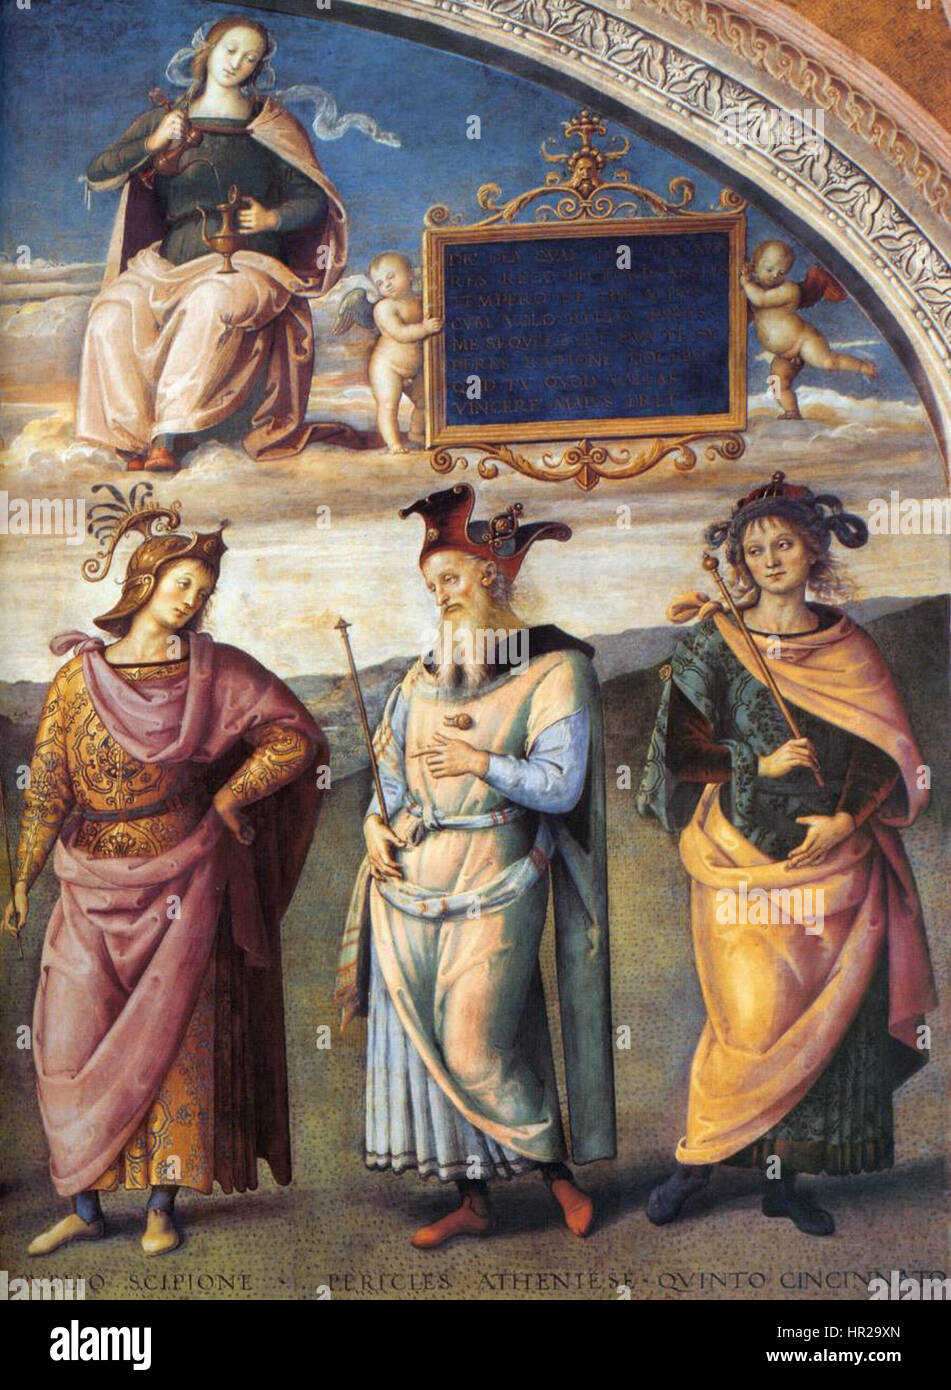 Pietro Perugino - uomini illustri dell'antichità (dettaglio) - WGA17238 Foto Stock